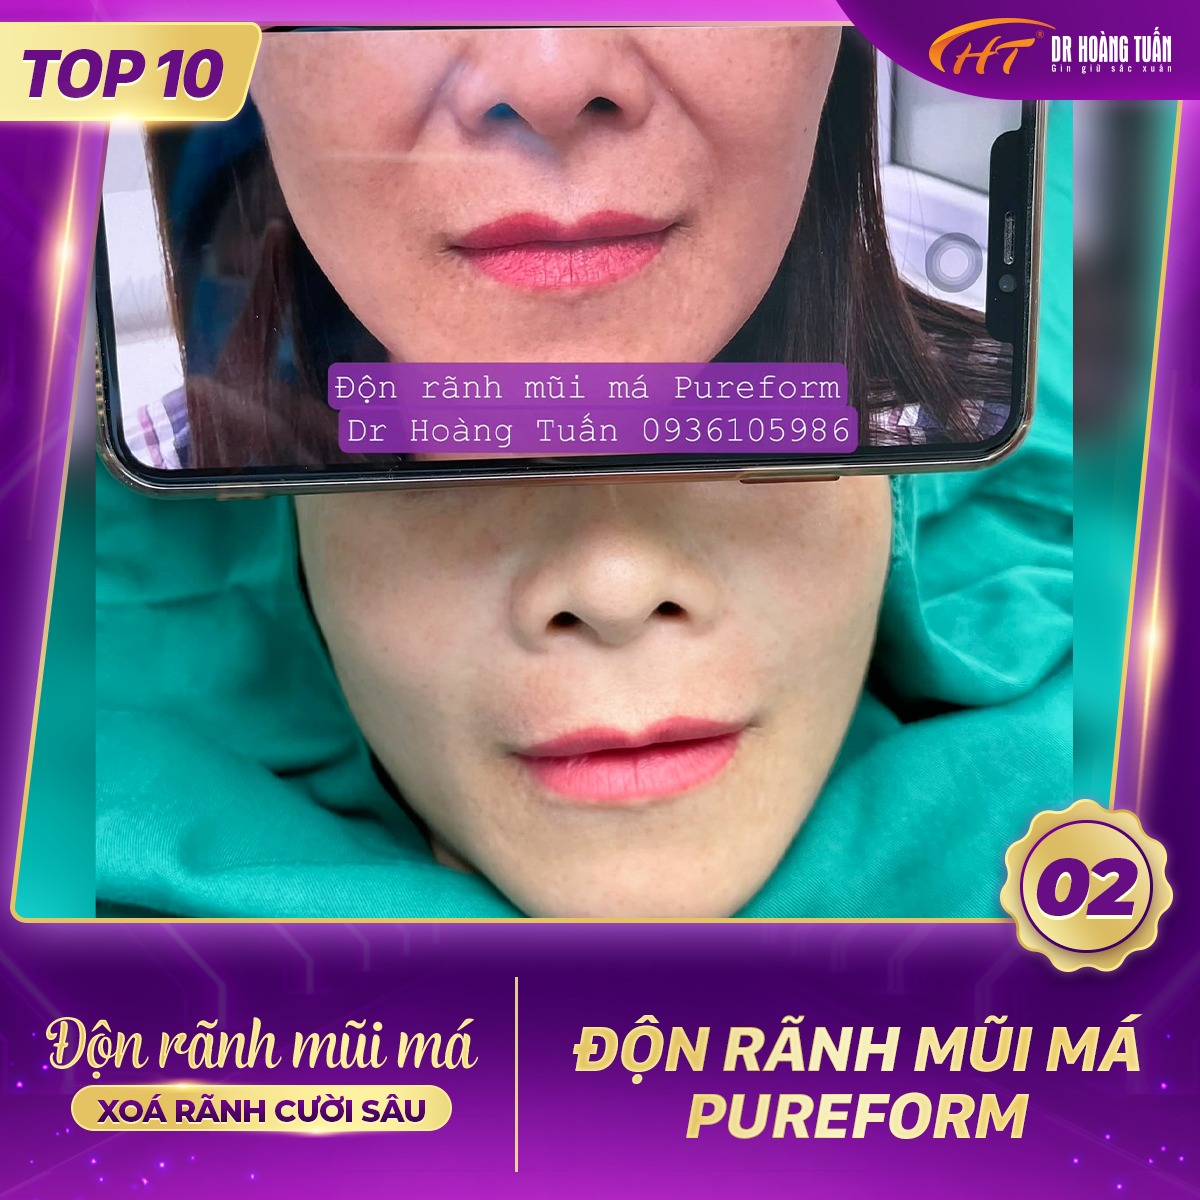 Hình ảnh kết quả độn rãnh mũi má tại Dr Hoàng Tuấn